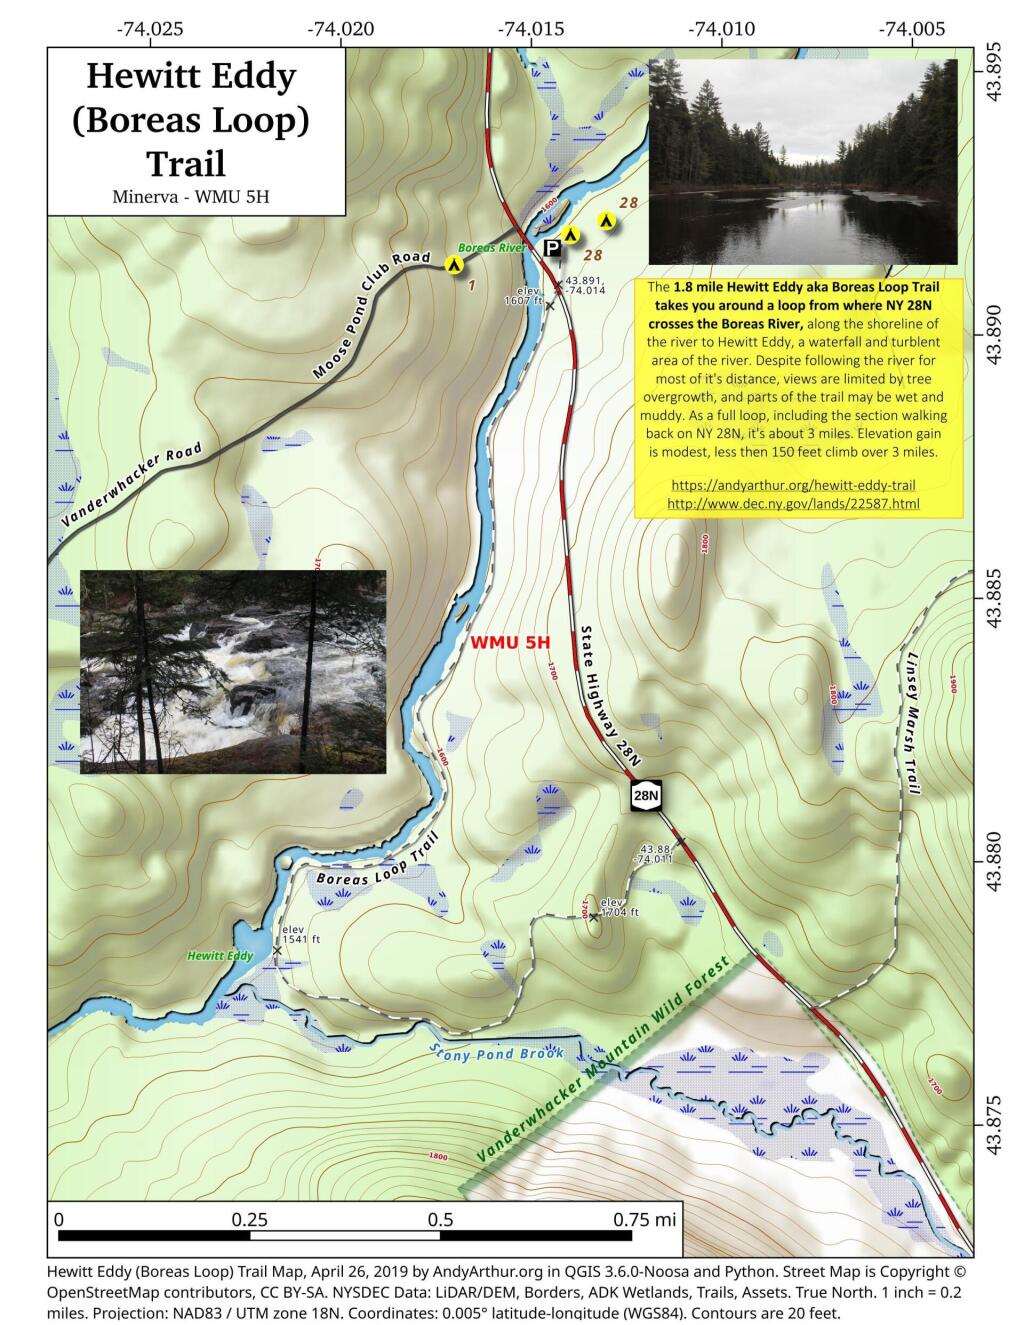  Hewitt Eddy (Boreas Loop) Trail